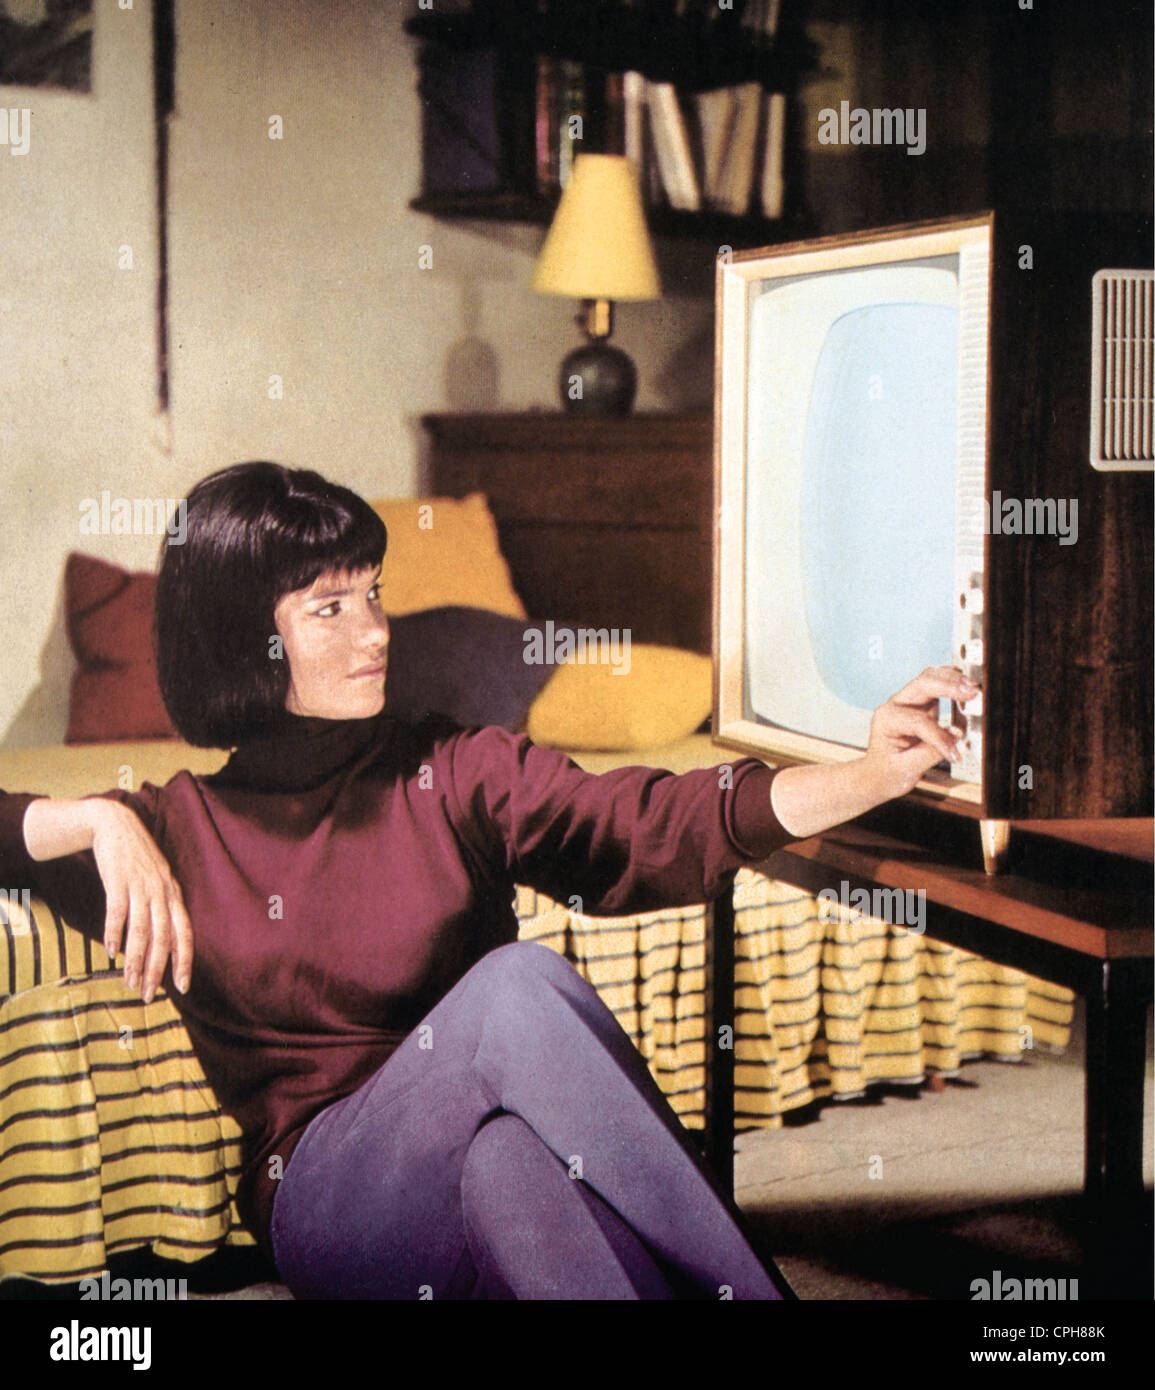 Trasmissione, televisione, spettatore davanti a un televisore, pubblicità per televisori RFT, Germania orientale, circa 1962, diritti aggiuntivi-clearences-non disponibile Foto Stock